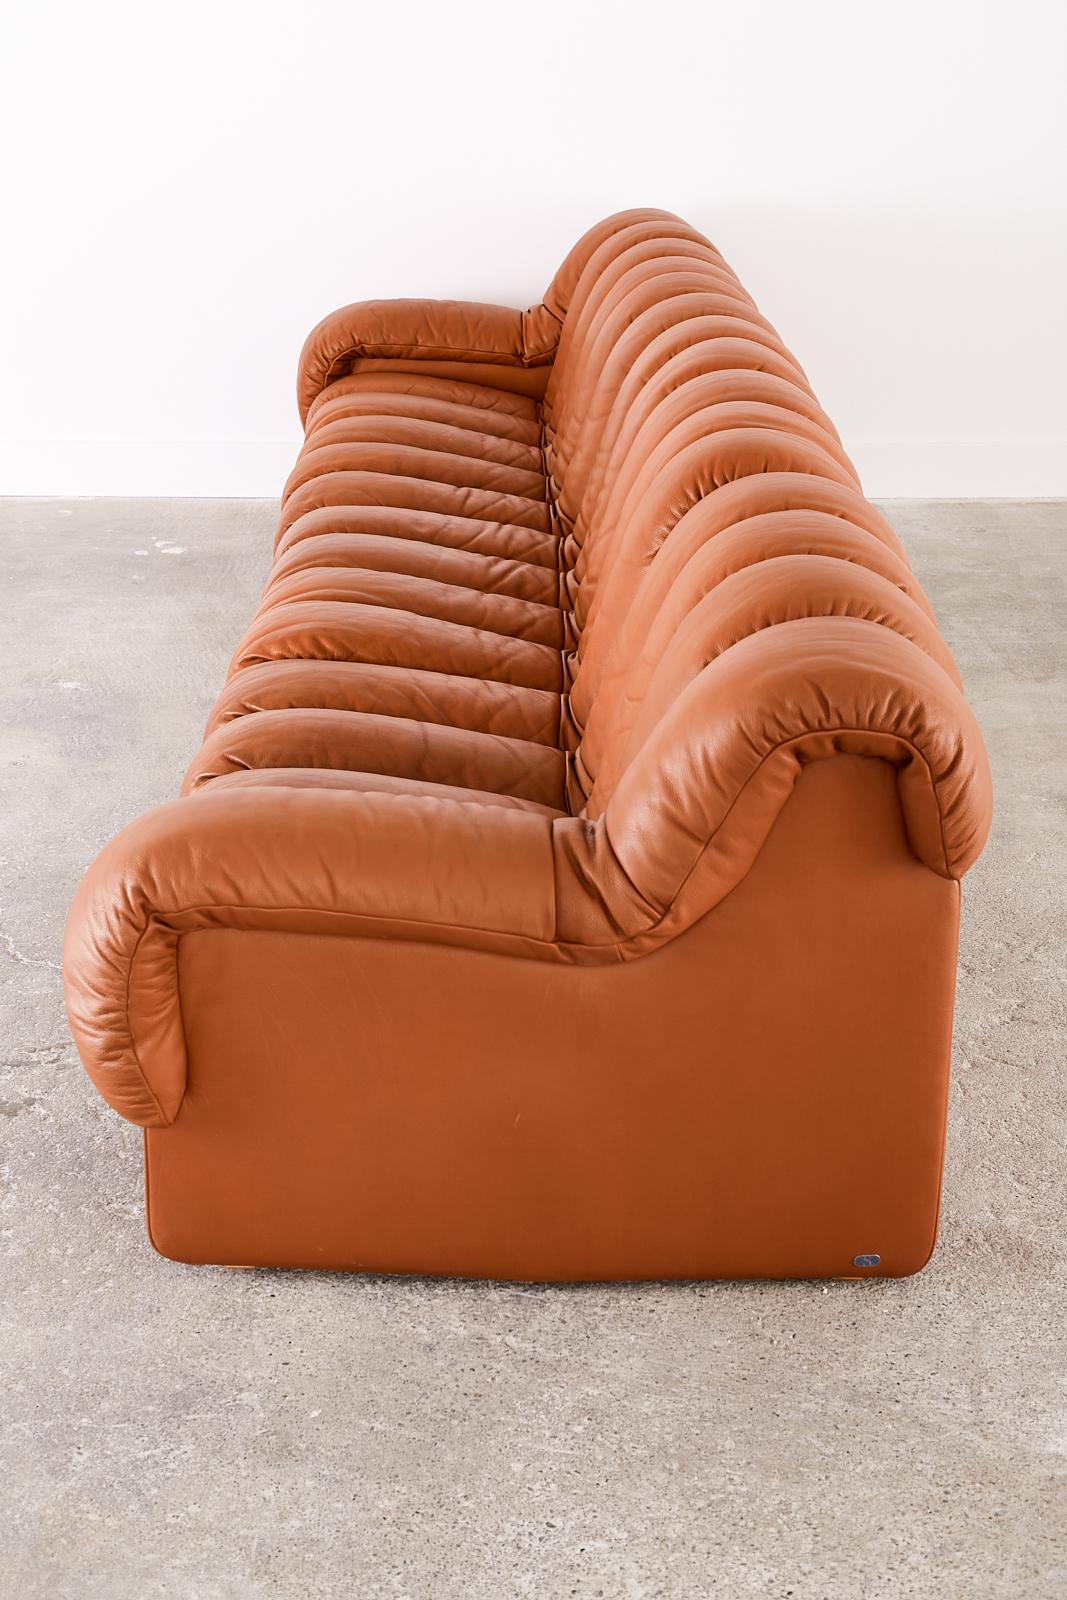 De Sede DS600 Cognac Leather Sectional Non-Stop Snake Sofa In Good Condition In Rio Vista, CA